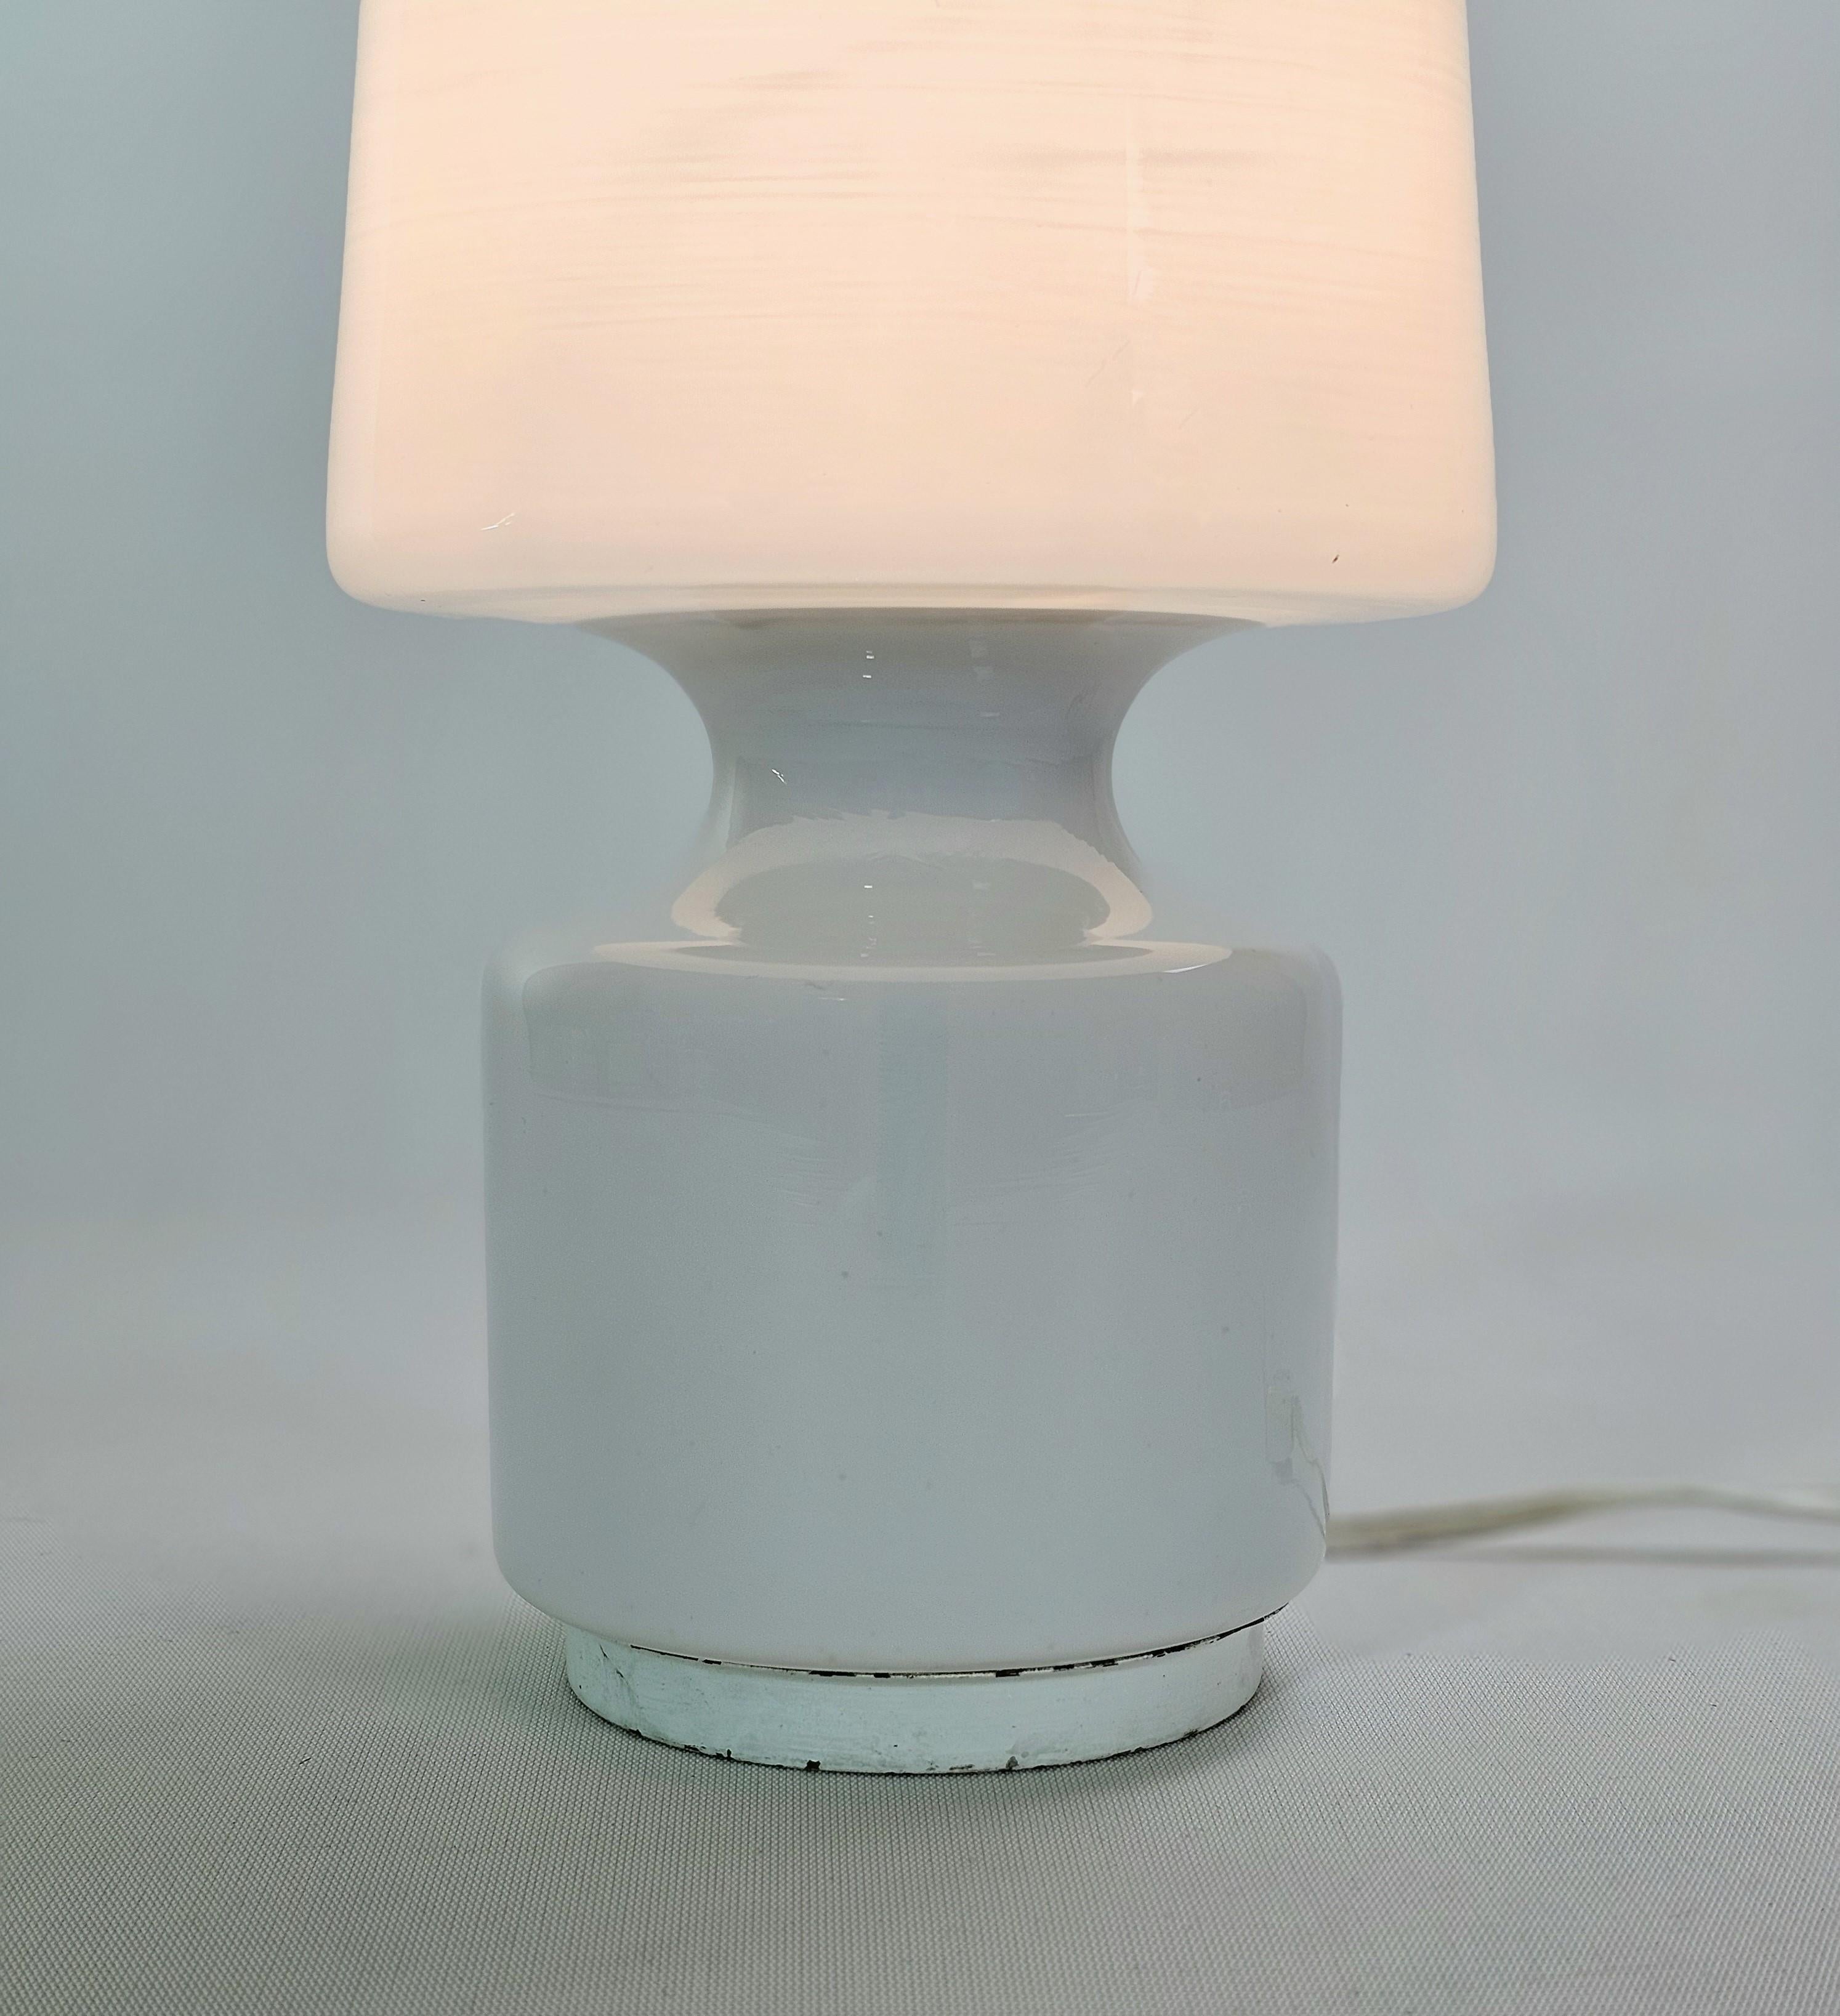 Table Lamp Milk Glass Enamelled Metal Midcentury Modern Italian Design 1960s  For Sale 1